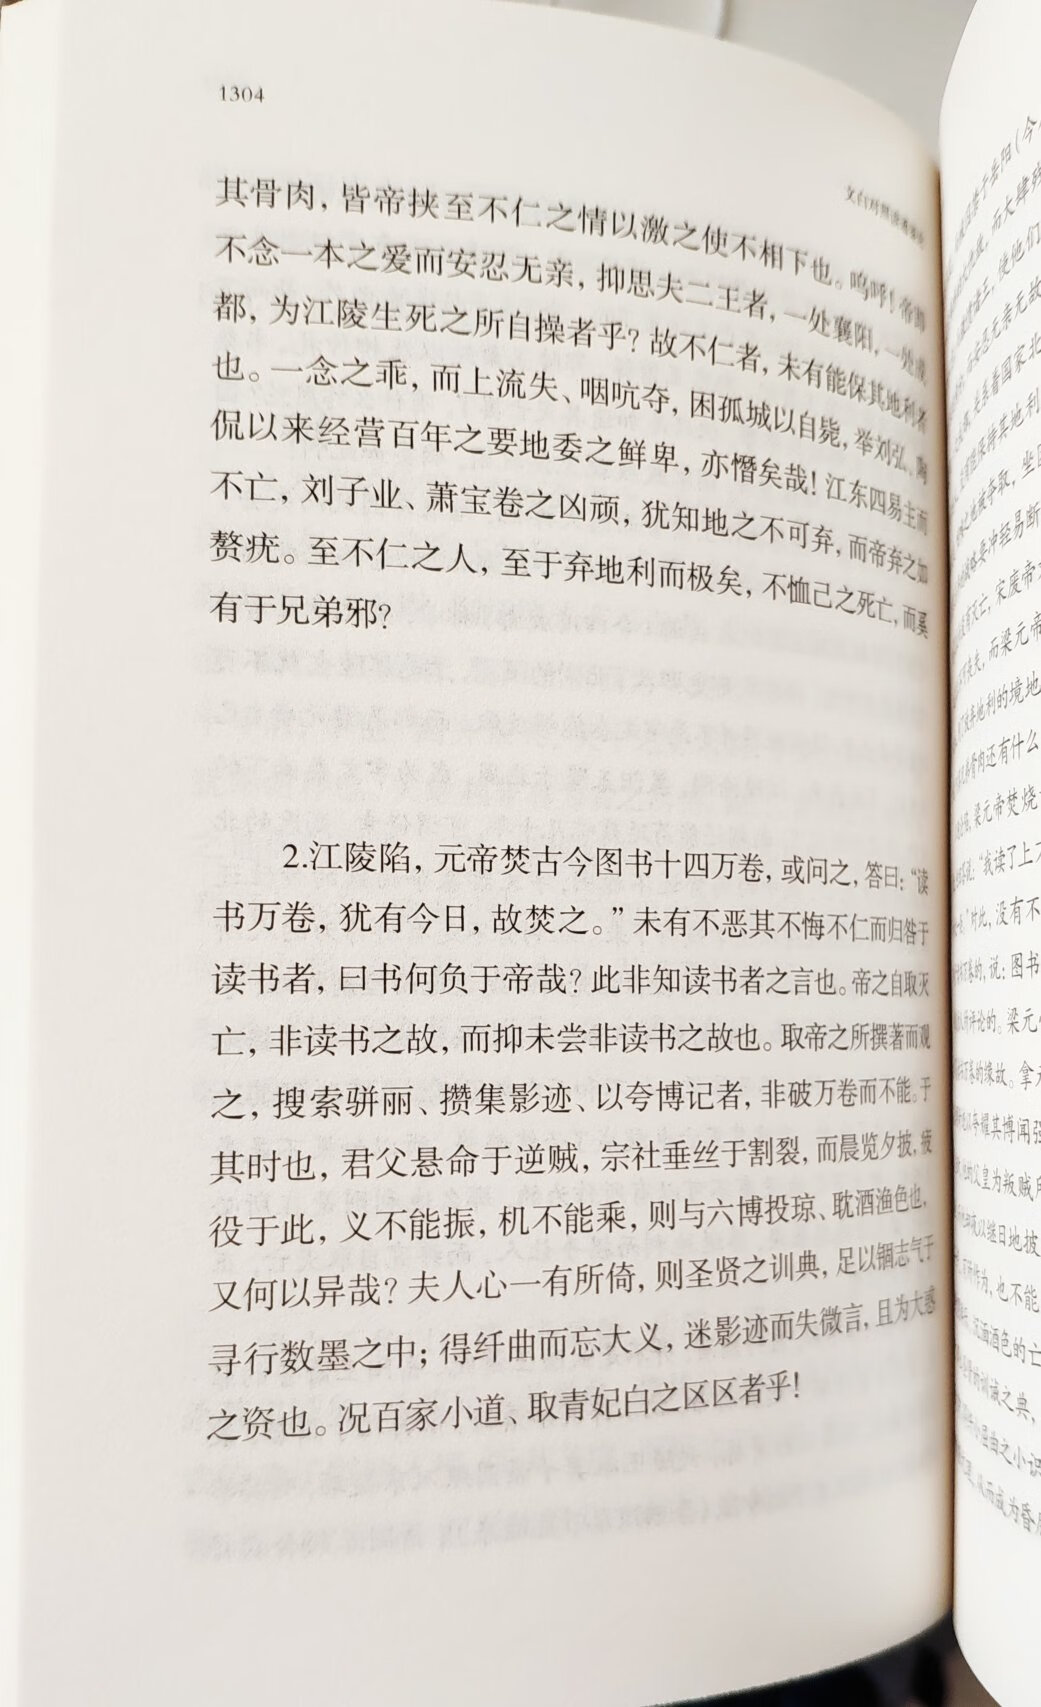 王夫之的《读通鉴论》，经典，不需要解释。这个版本有翻译，应该不错，如果有注释翻译一起的就好了。希望能少点错别字……